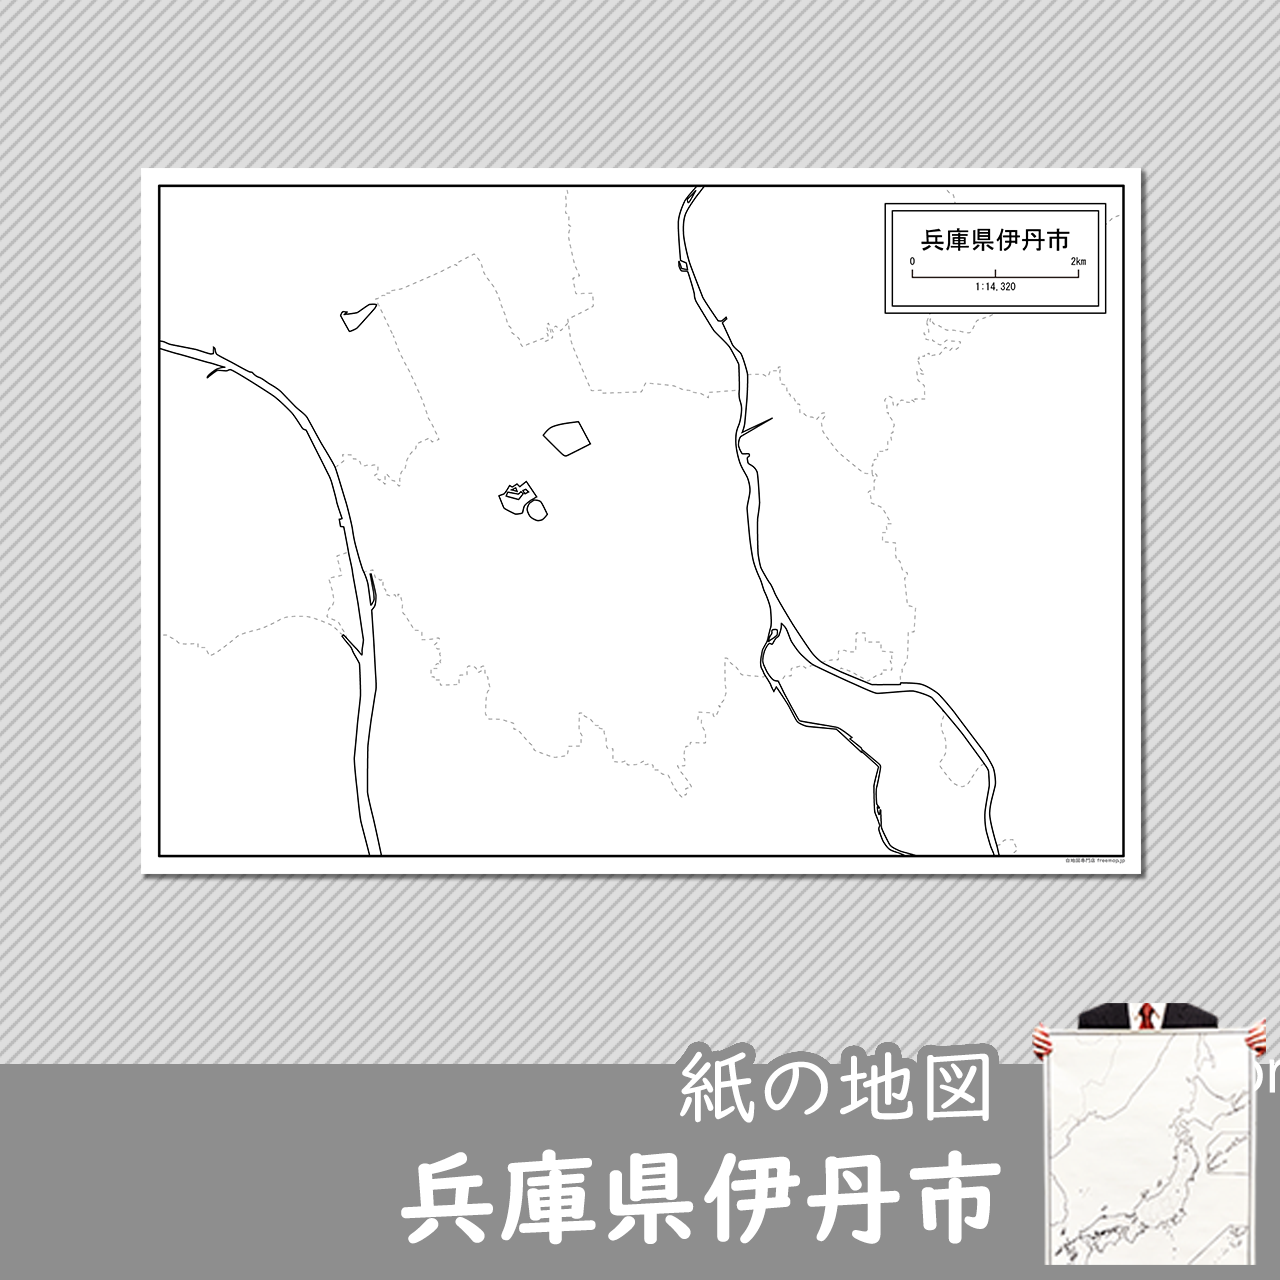 伊丹市の紙の白地図のサムネイル